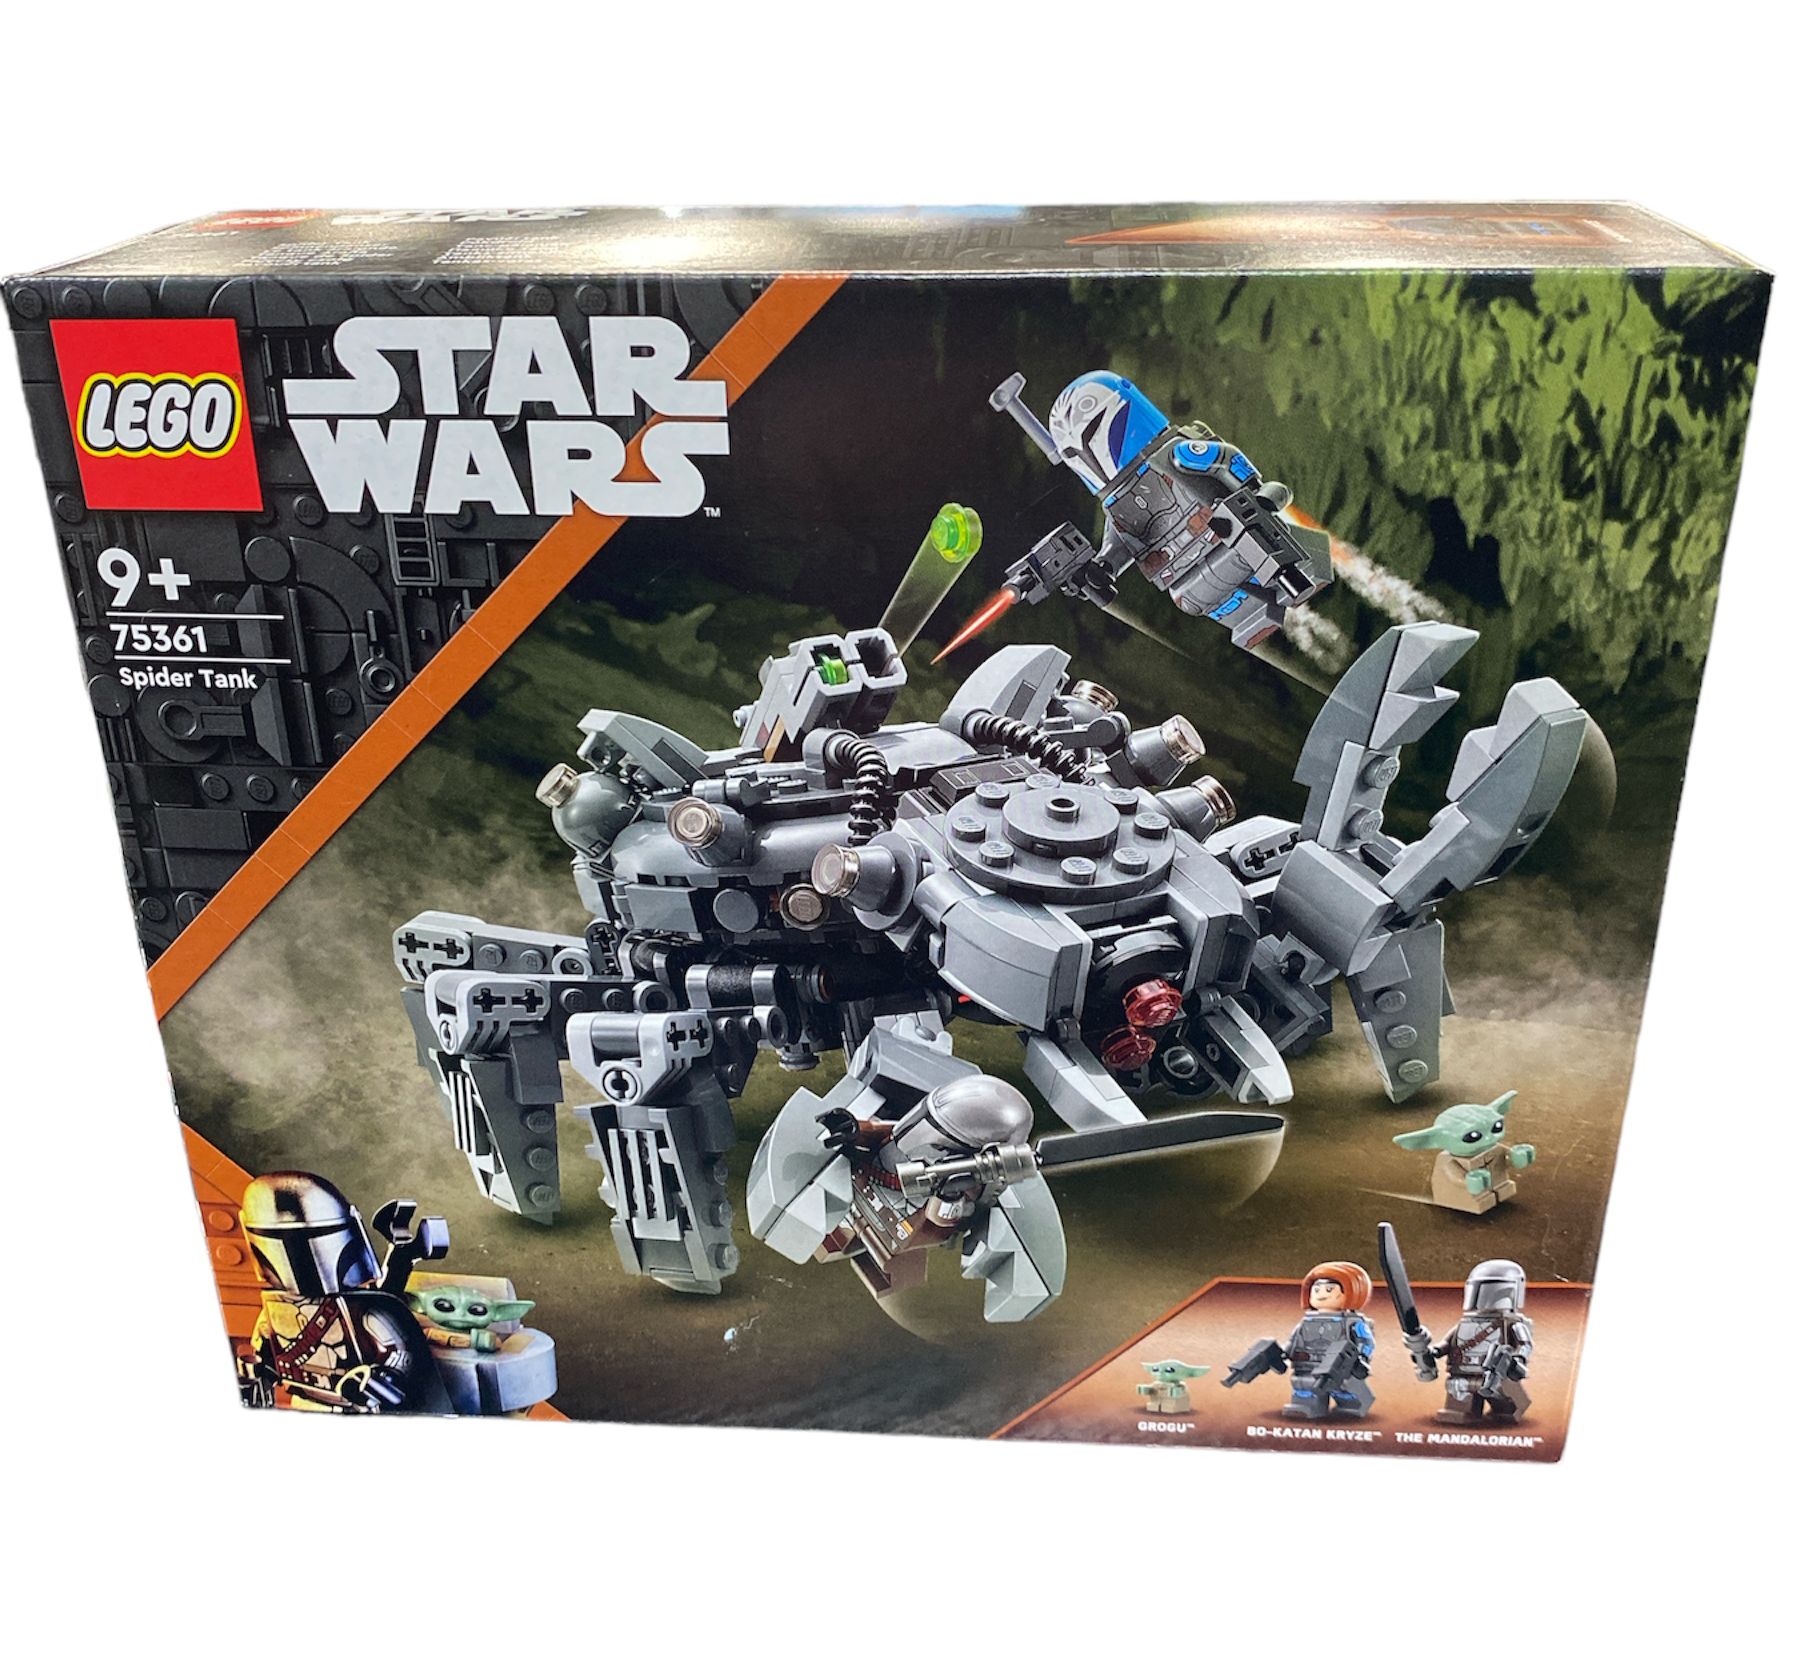 Lego Star Wars Spider Tank- 75361